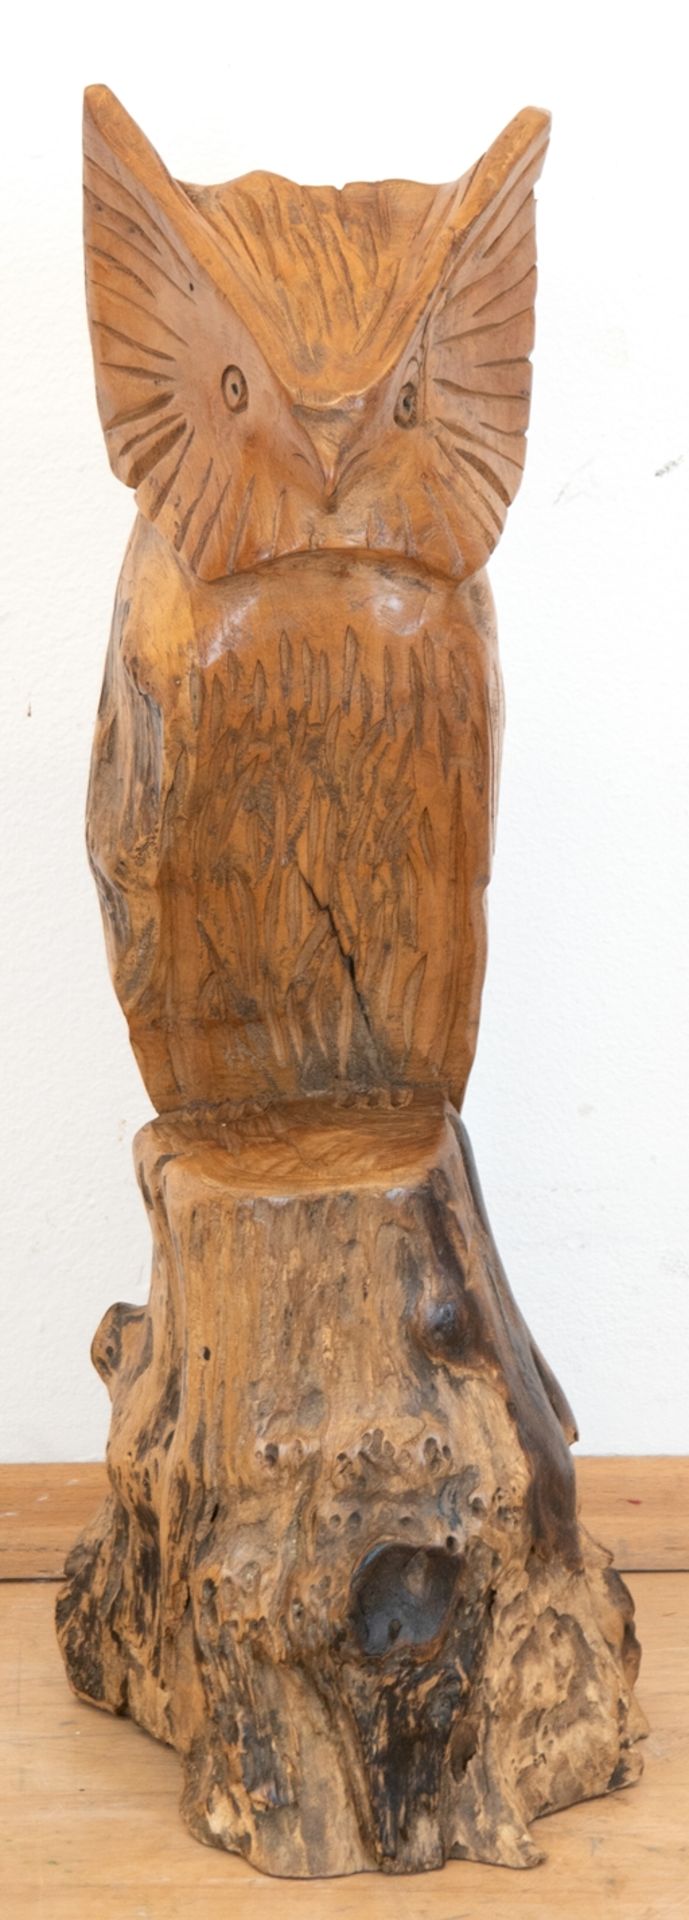 Gartendeko "Eule auf Baumstamm", Holz, geschnitzt, Unikat, H. 60 cm